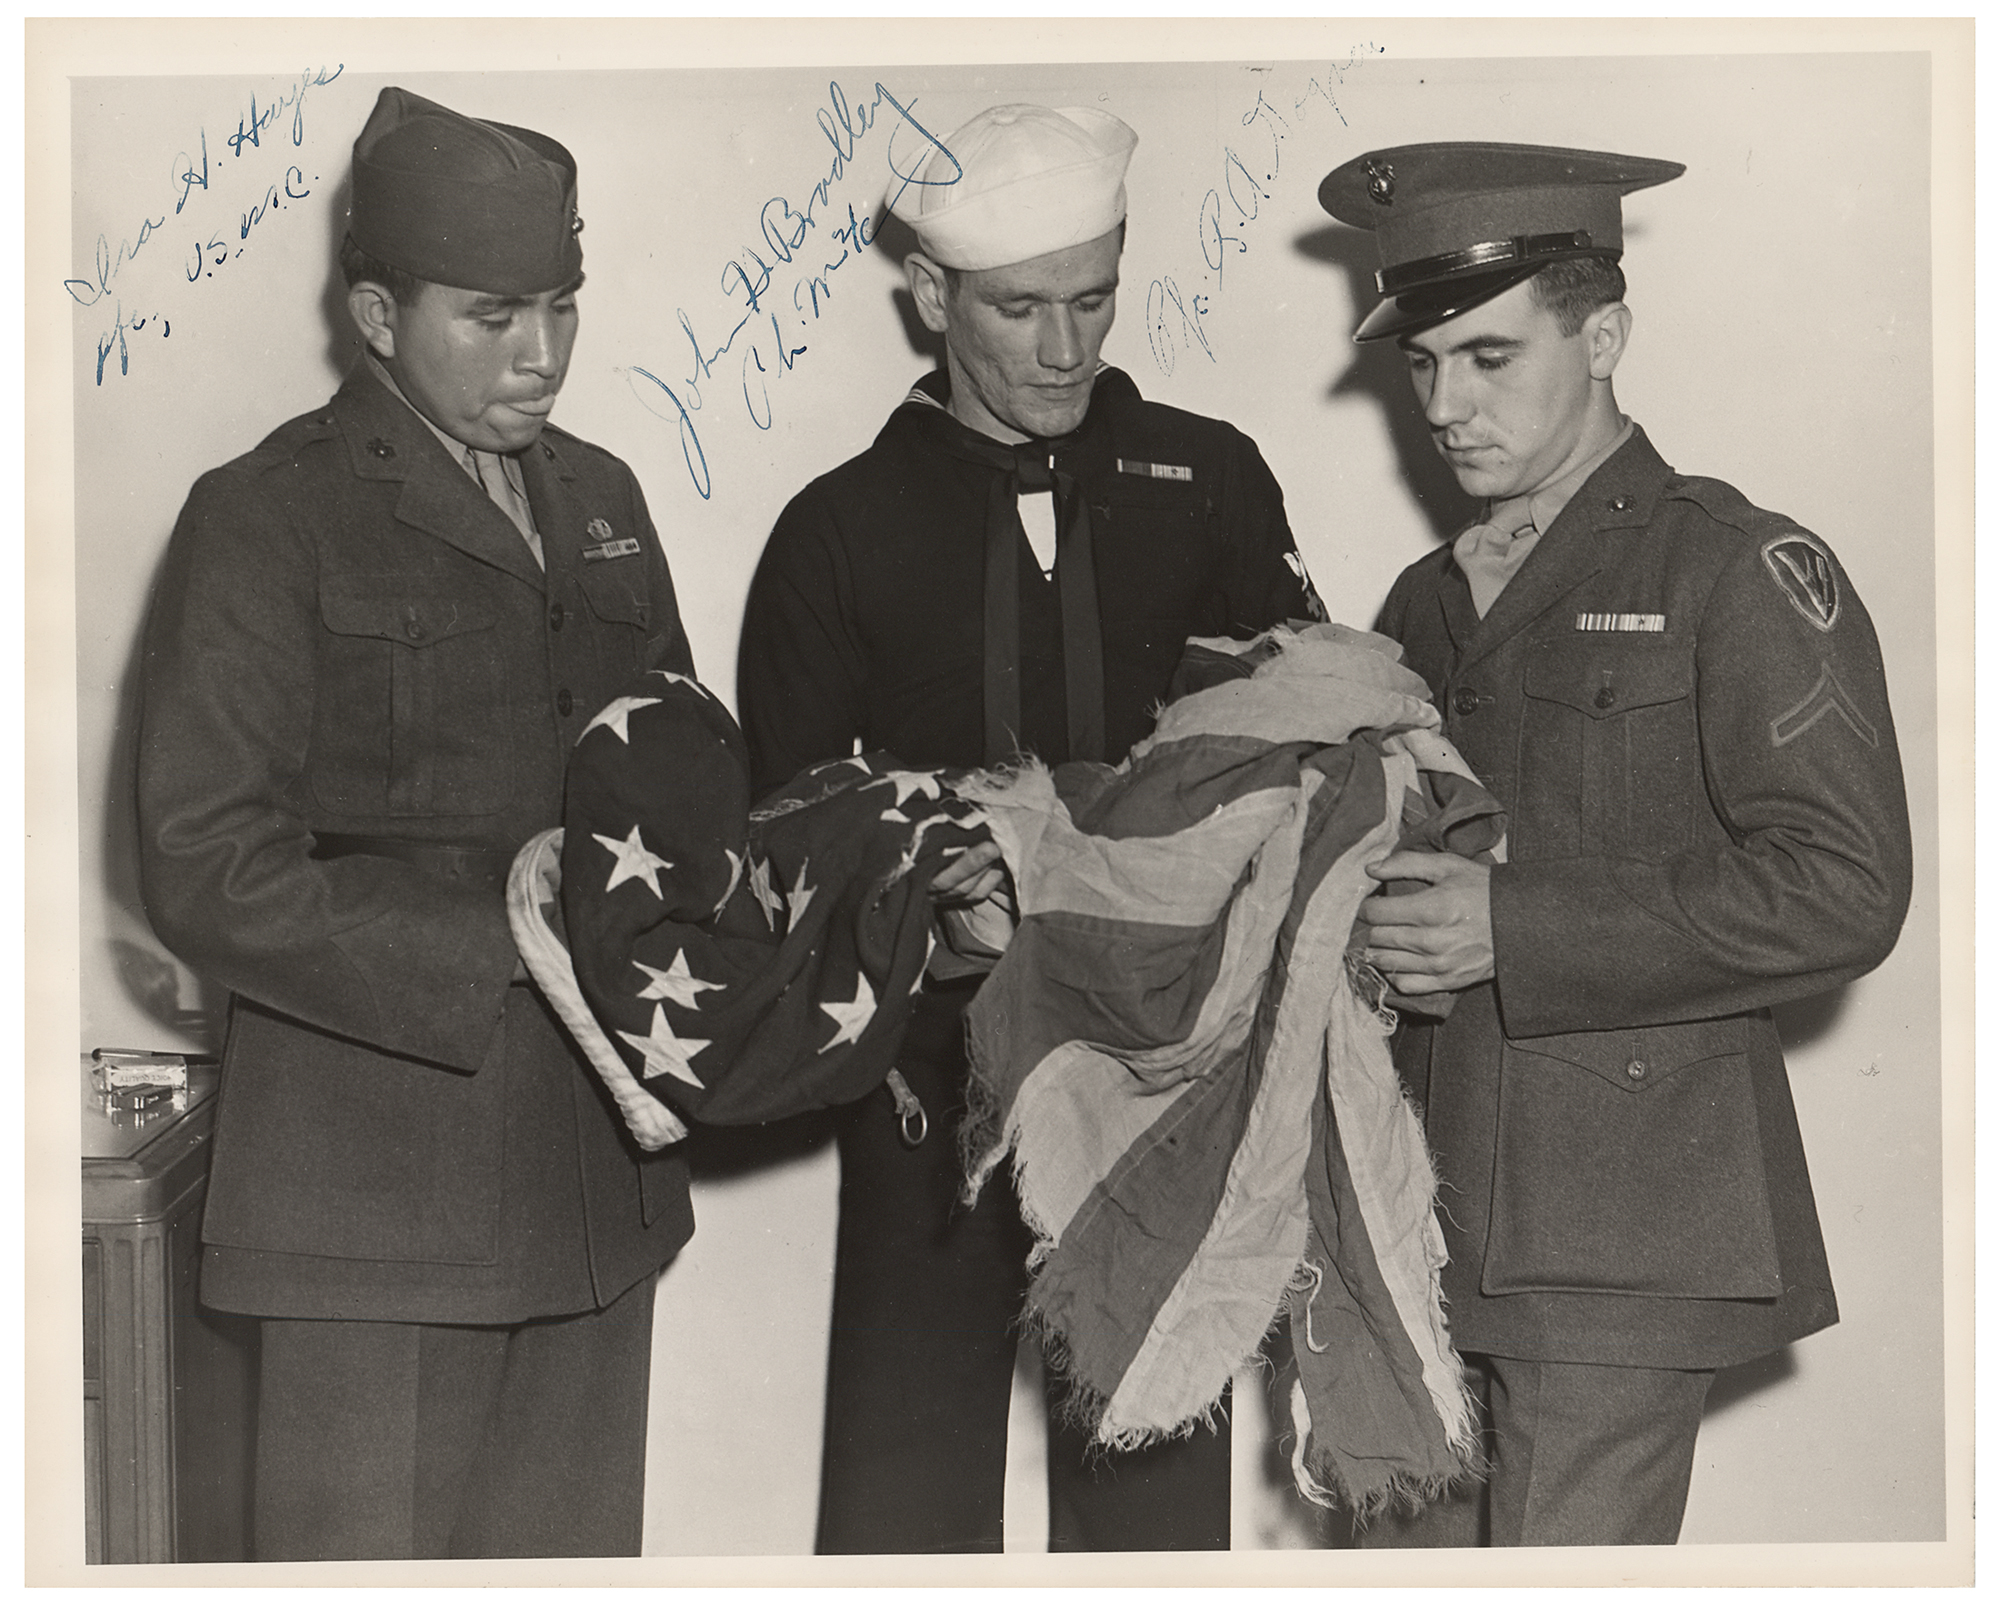 Lot #383 Iwo Jima Flag Raisers Signed Photograph